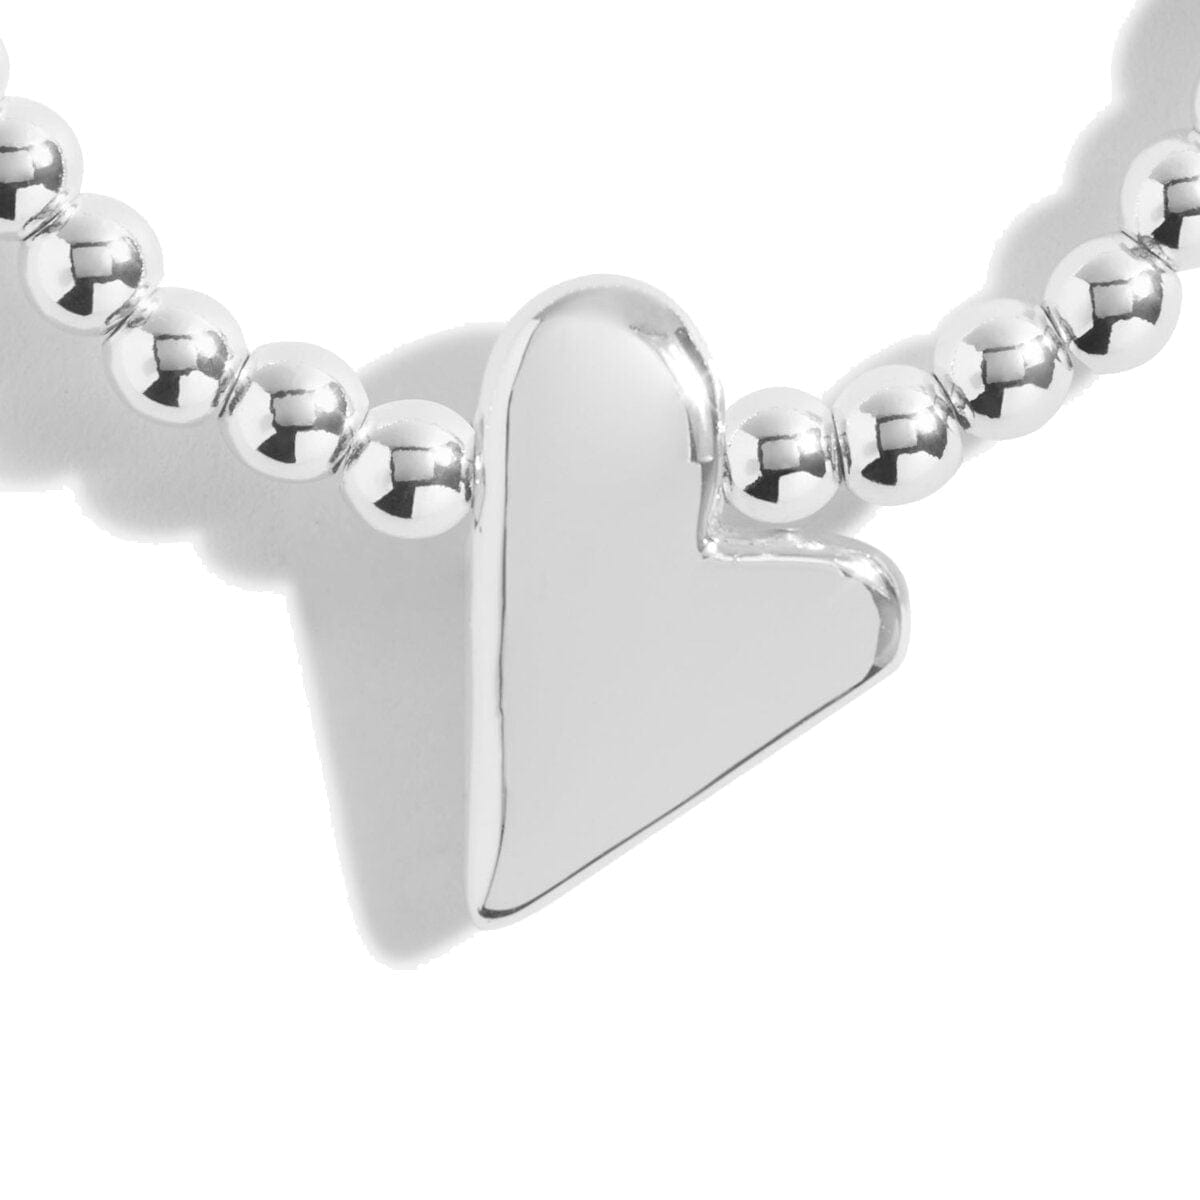 Joma Jewellery Bracelet Joma Jewellery Bracelet - A Little Best Friend (Heart)